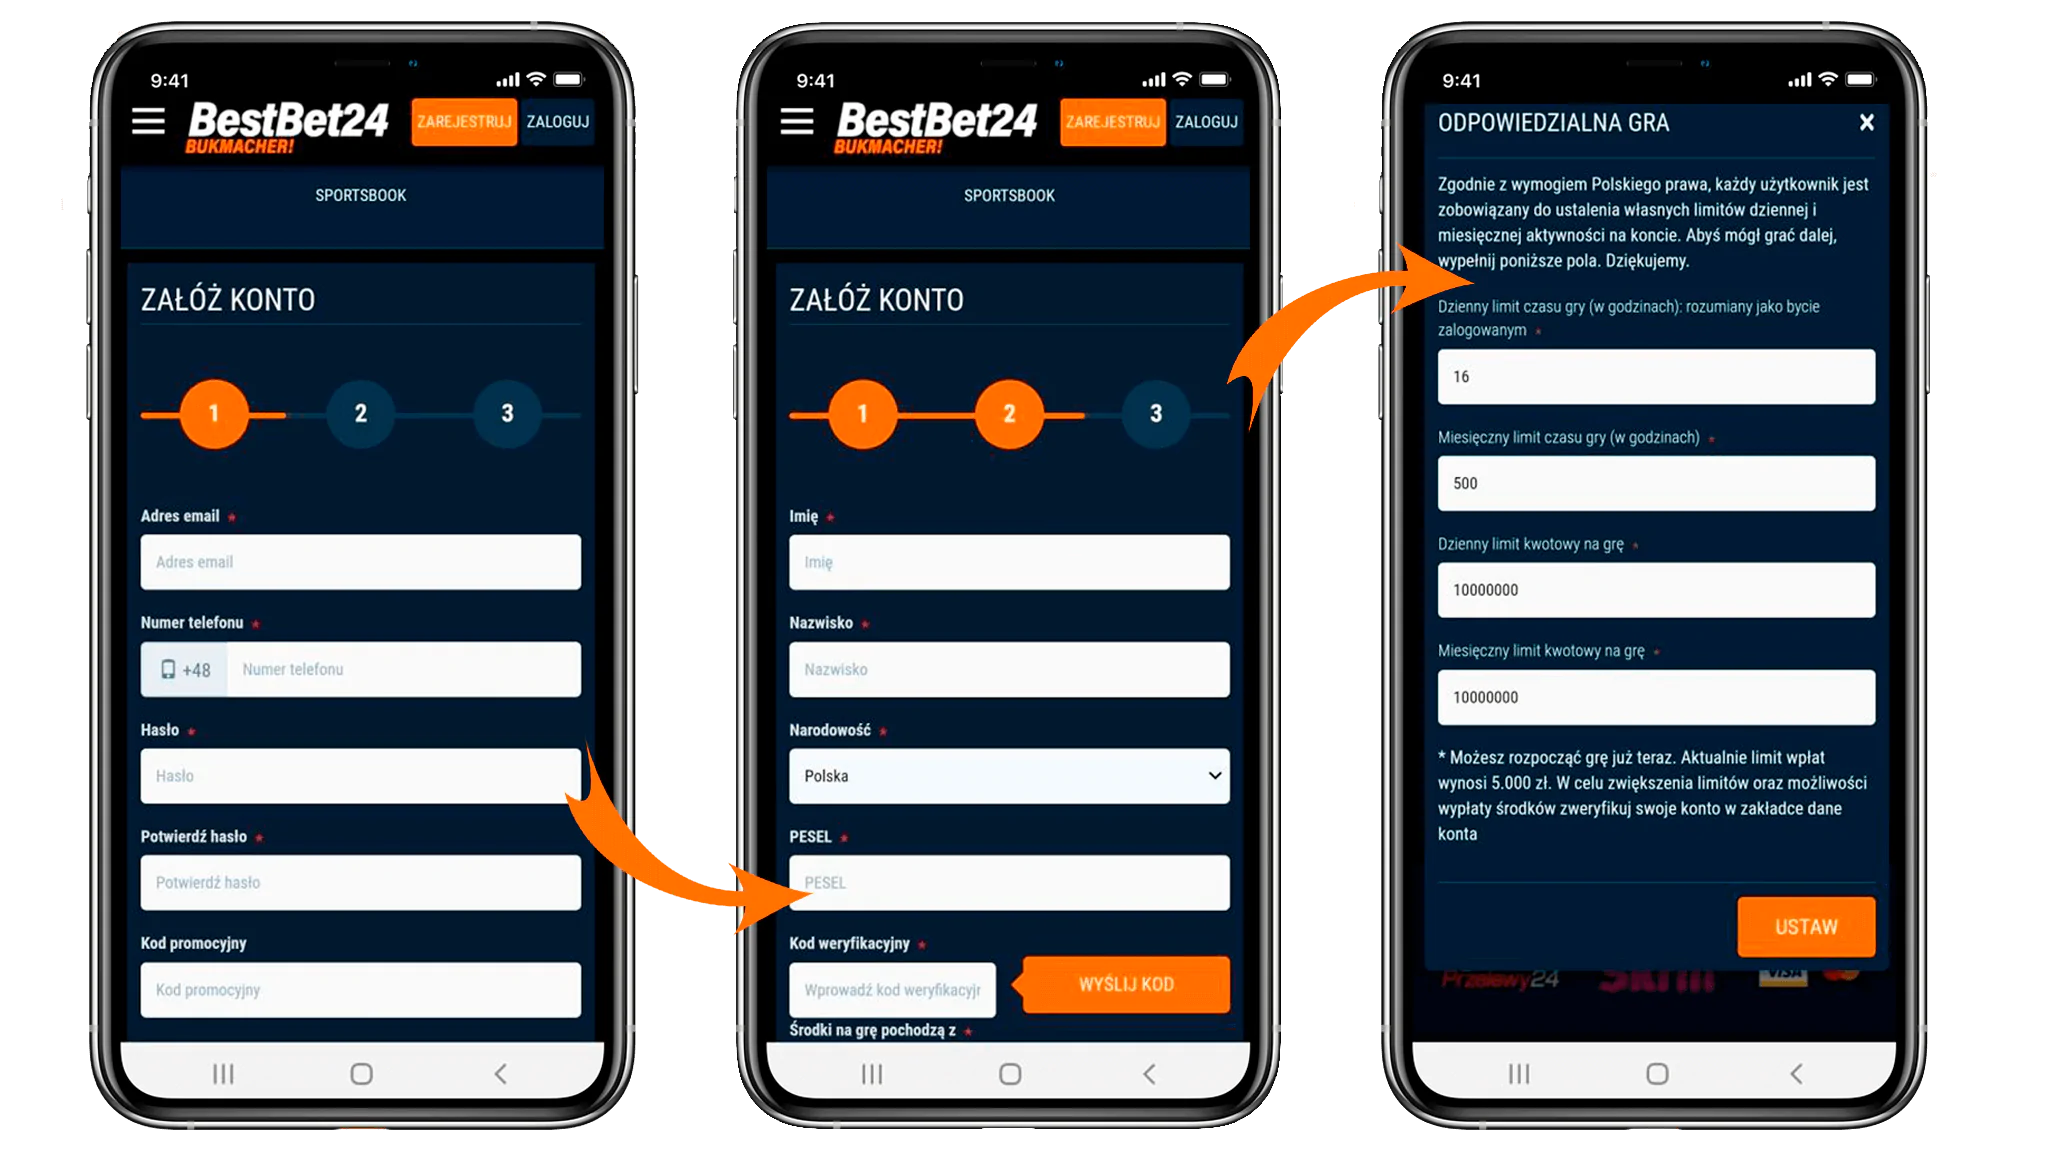 Mobilna rejestracja bukmachera w BestBet24 w trzech krokach - wypełnij swoje dane uwierzytelniające, podaj numer pesel, ustaw limity gry